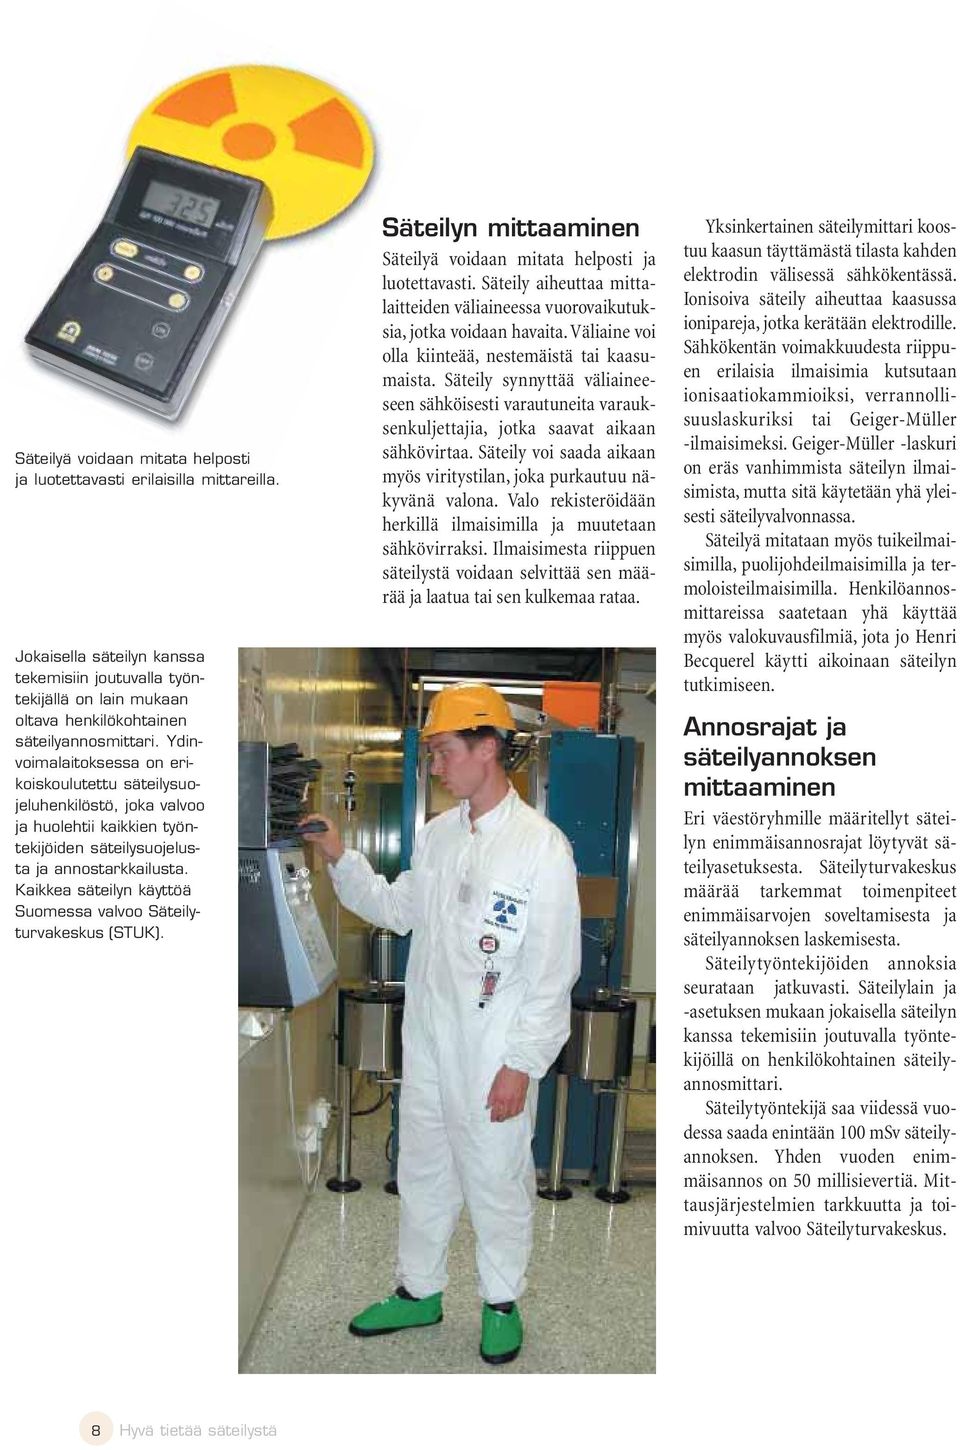 Kaikkea säteilyn käyttöä Suomessa valvoo Säteilyturvakeskus (STUK). Säteilyn mittaaminen Säteilyä voidaan mitata helposti ja luotettavasti.